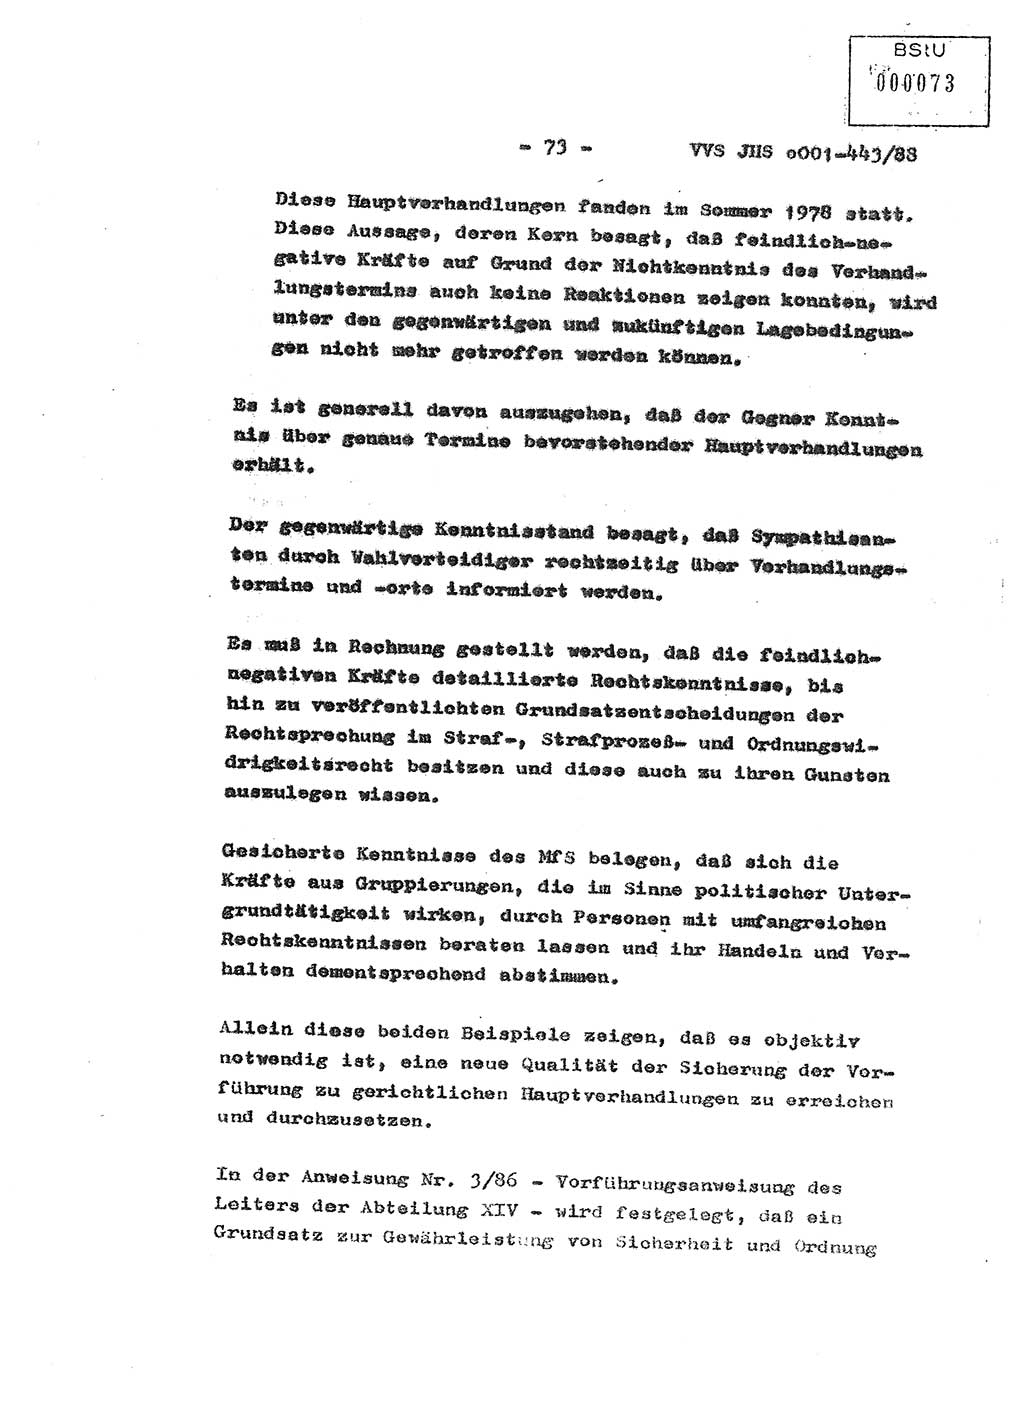 Diplomarbeit Hauptmann Michael Rast (Abt. ⅩⅣ), Major Bernd Rahaus (Abt. ⅩⅣ), Ministerium für Staatssicherheit (MfS) [Deutsche Demokratische Republik (DDR)], Juristische Hochschule (JHS), Vertrauliche Verschlußsache (VVS) o001-443/88, Potsdam 1988, Seite 73 (Dipl.-Arb. MfS DDR JHS VVS o001-443/88 1988, S. 73)